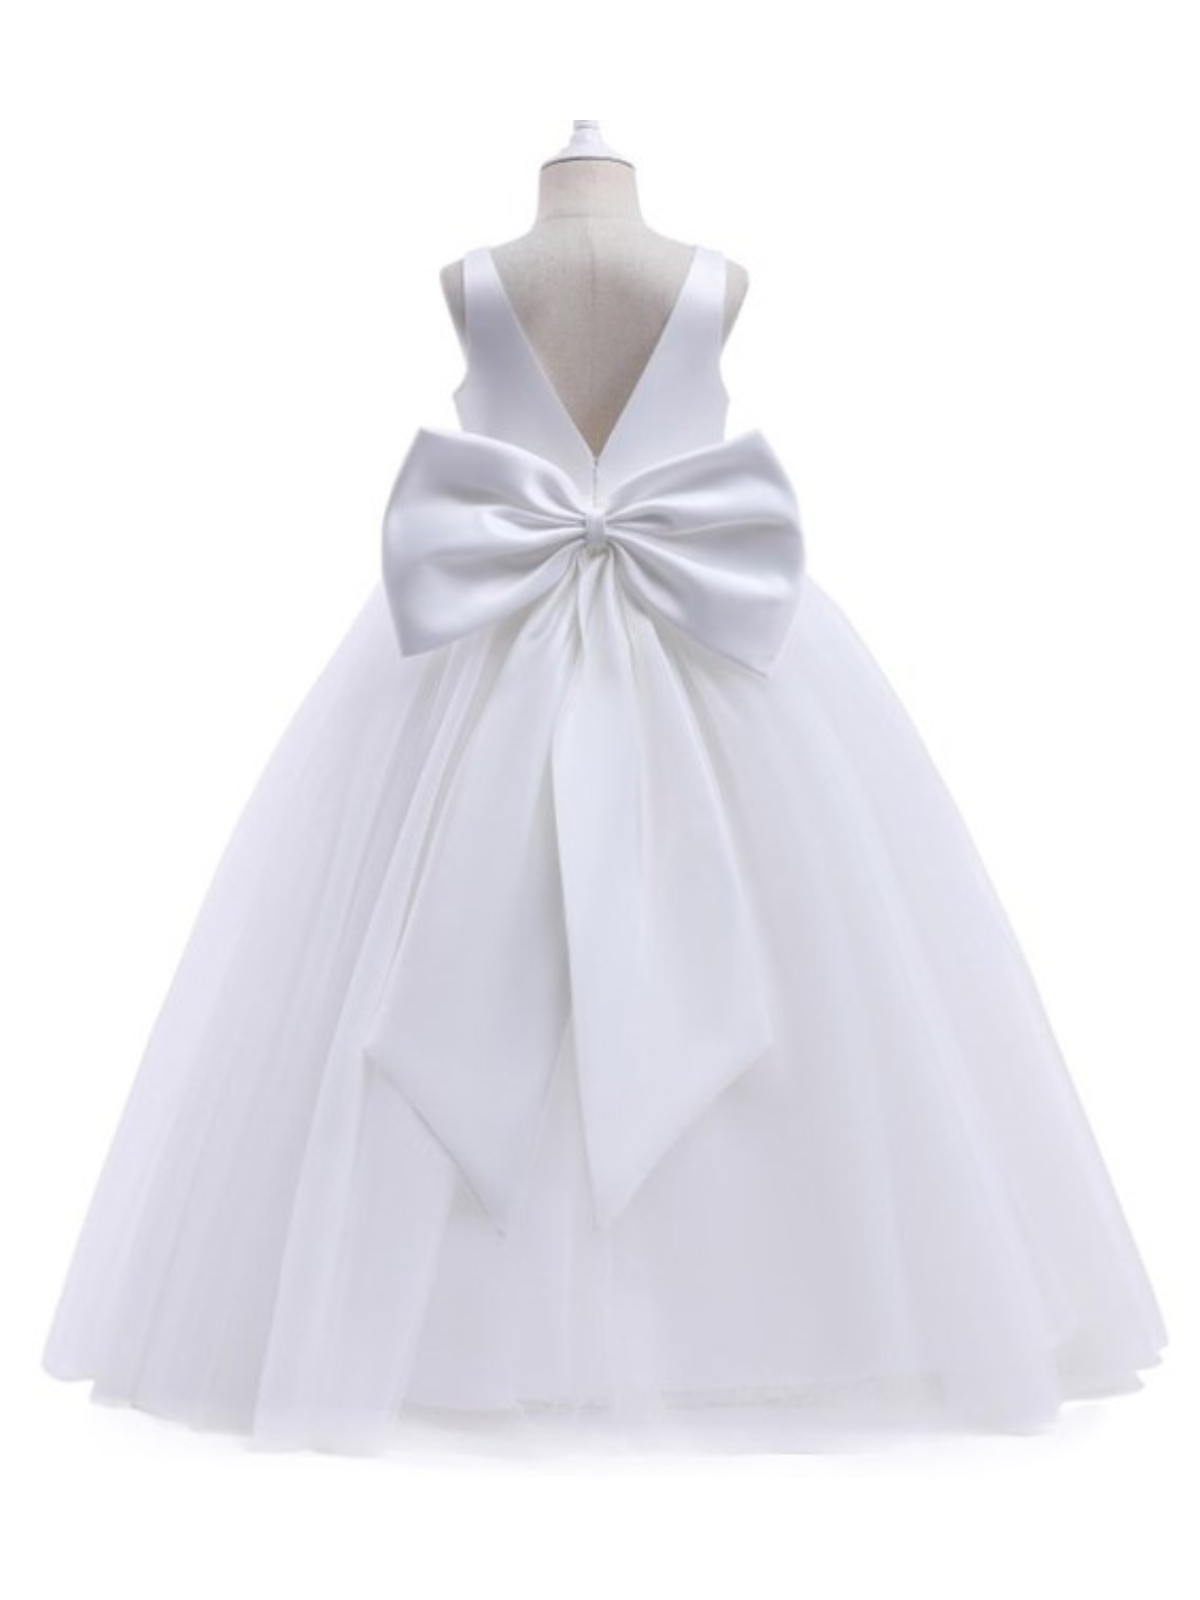 Girls Communion Dresses | White V Neck Full Length Communion Gown